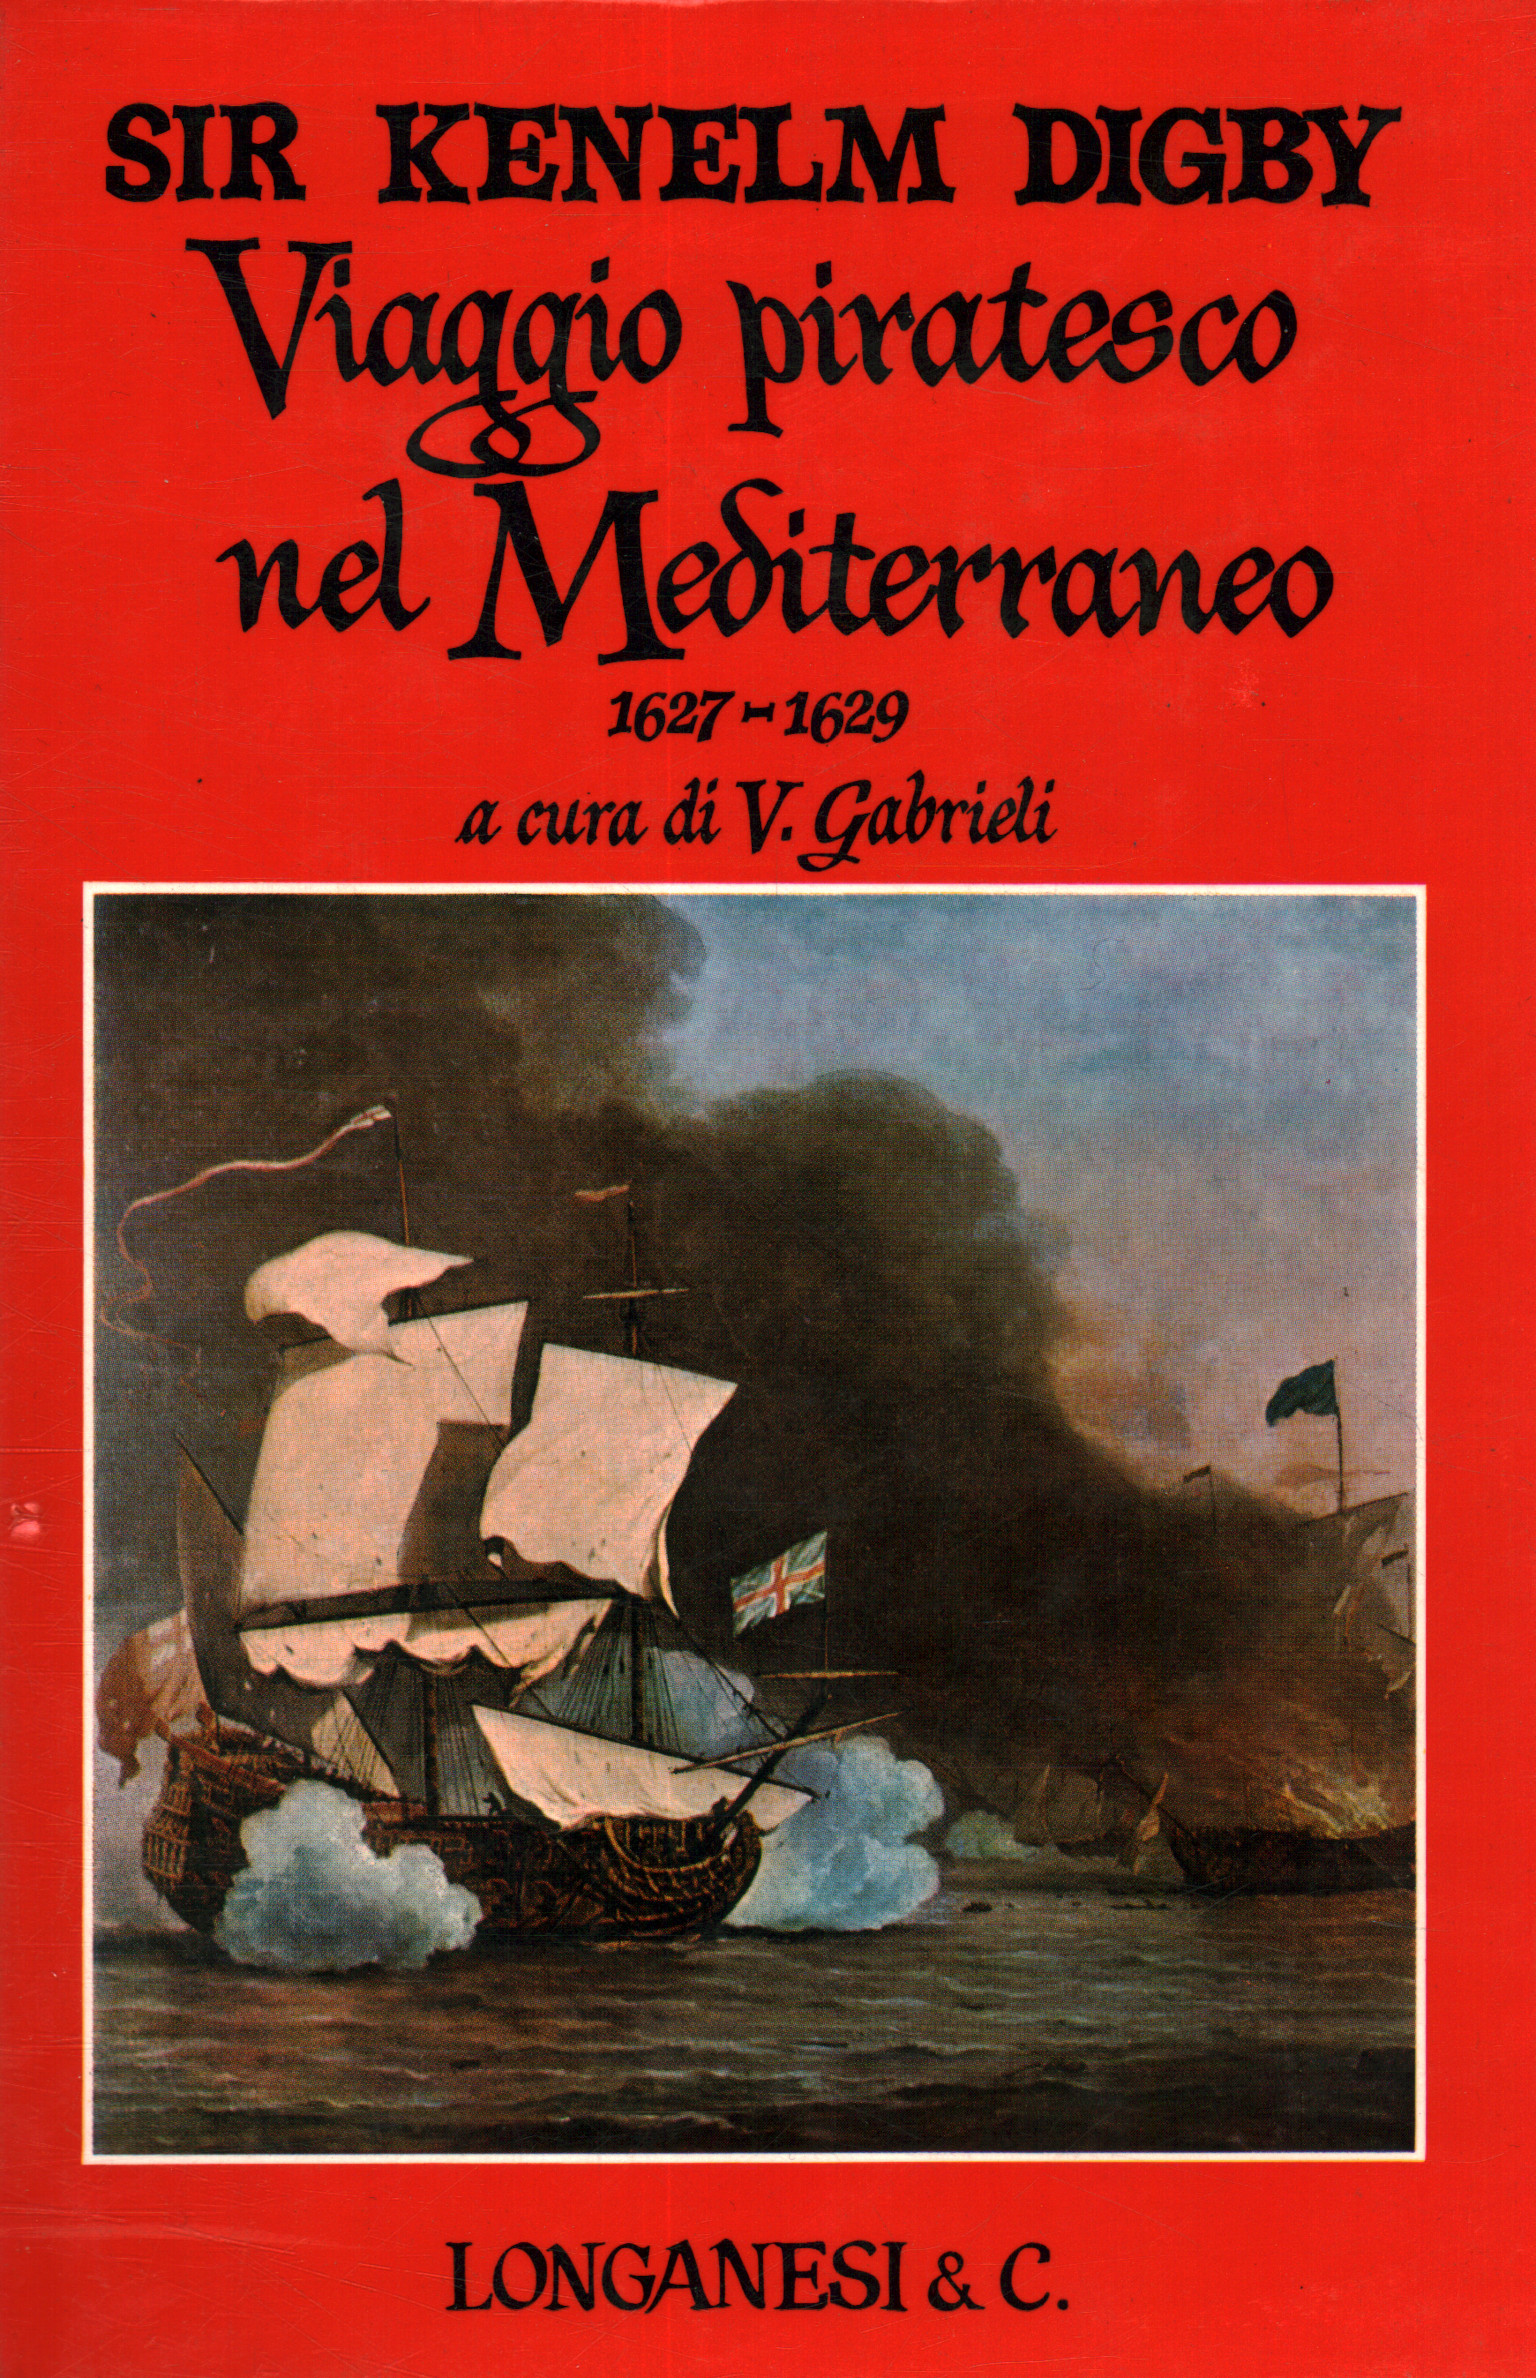 Pirate voyage in the Mediterranean 1627-16